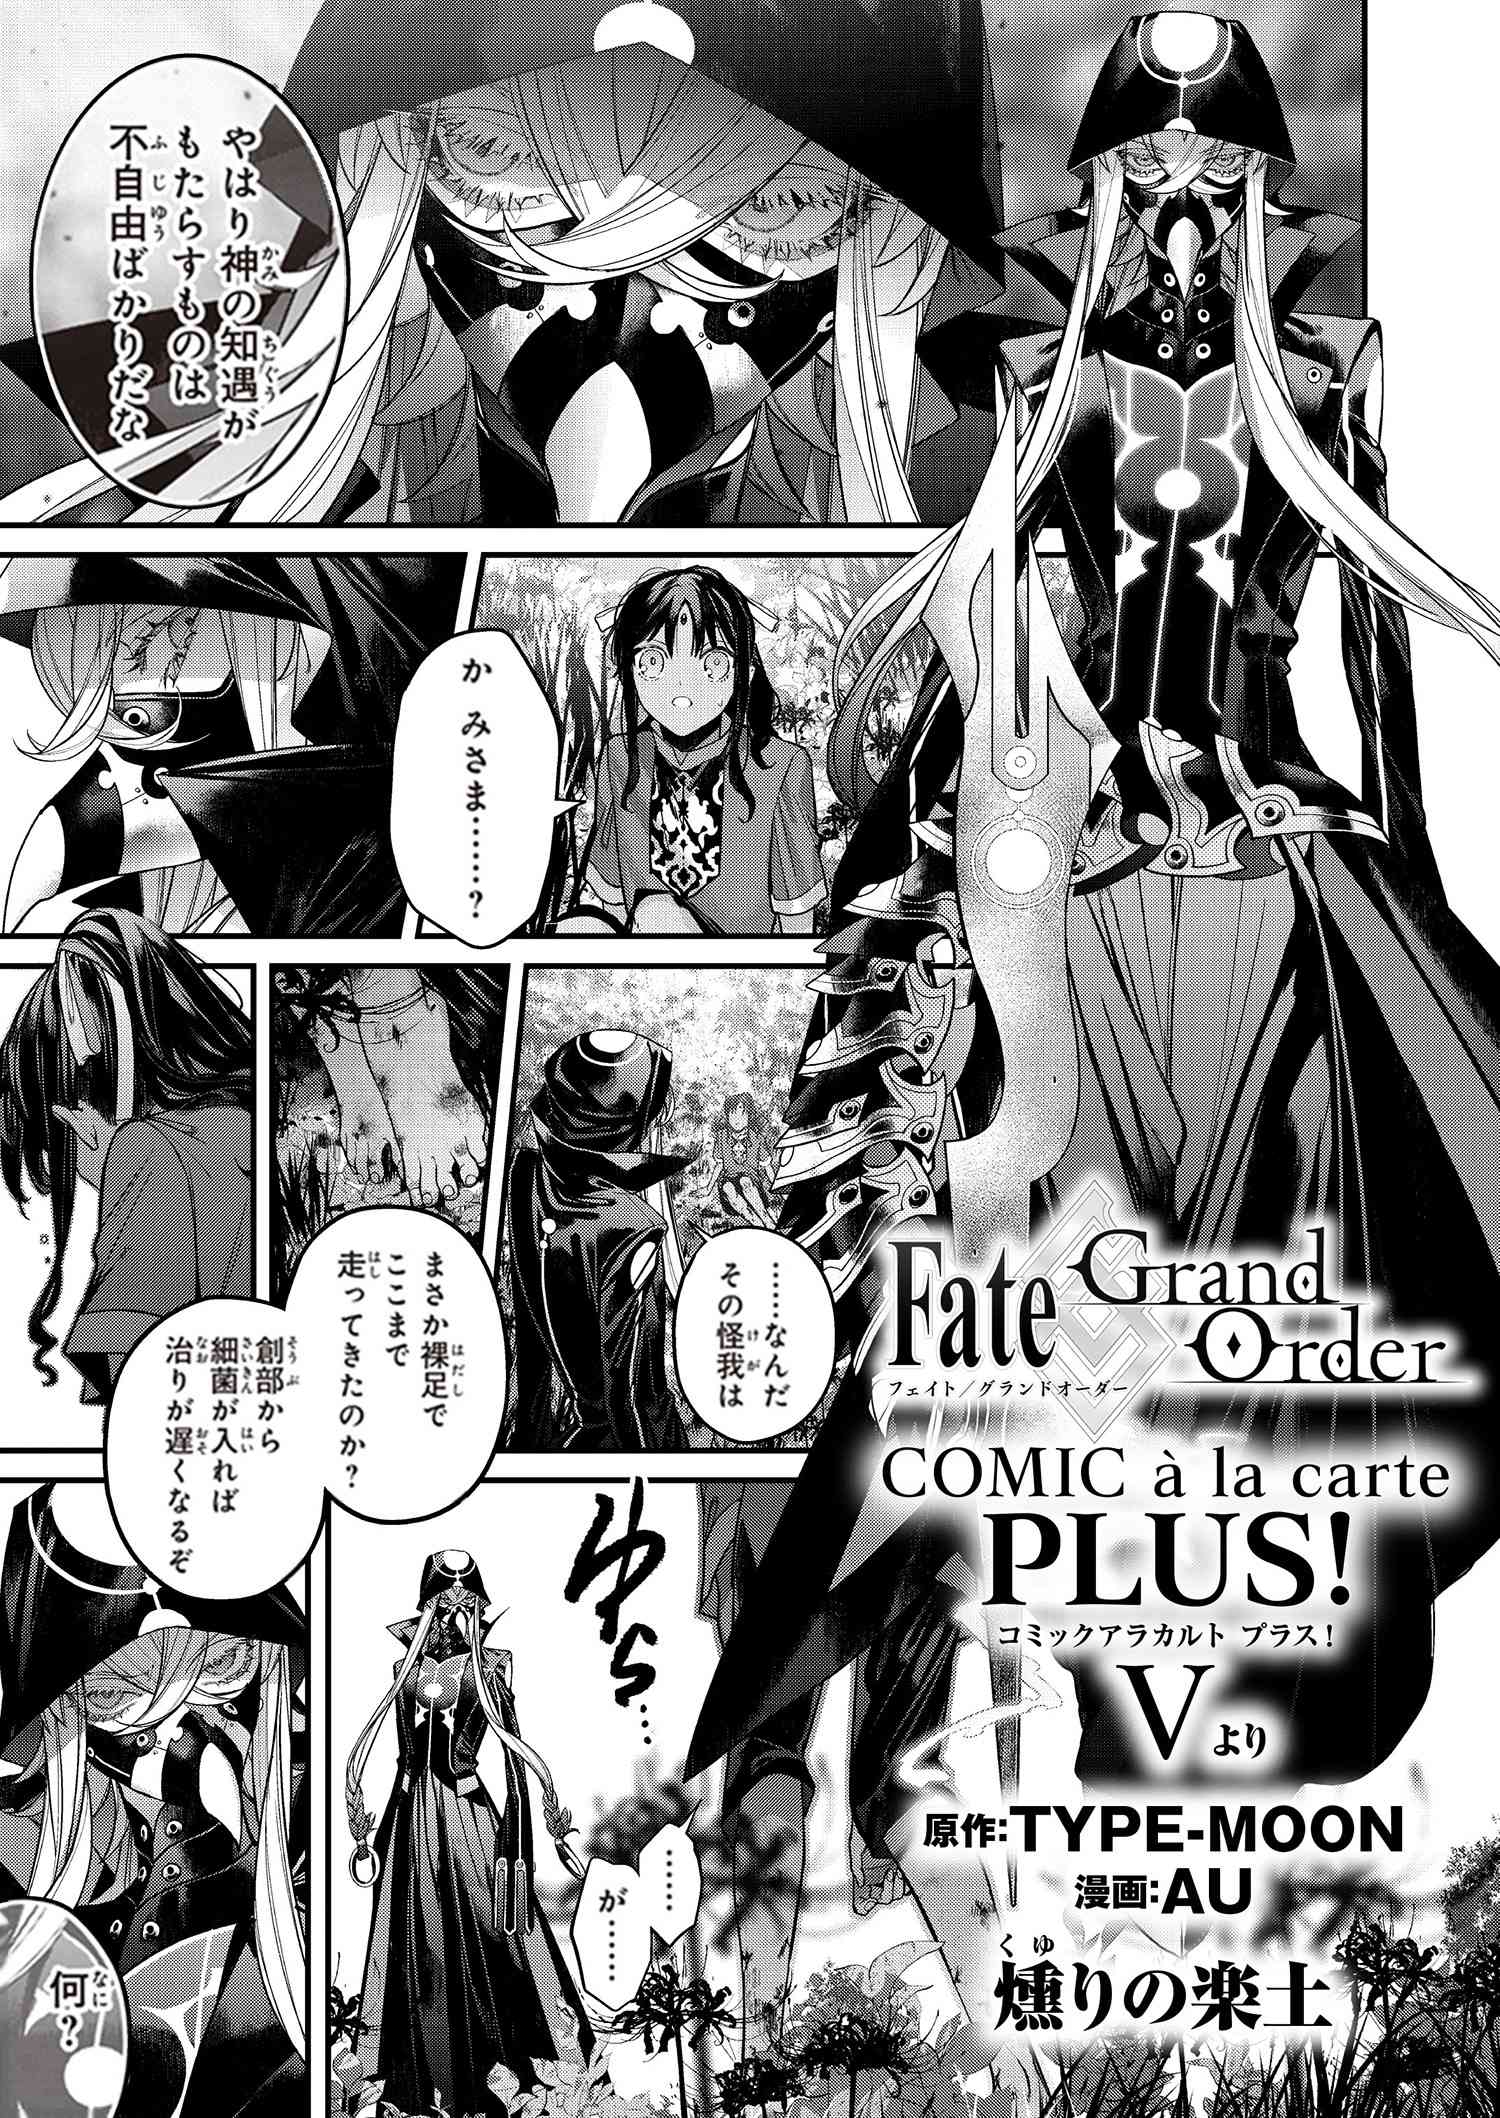 Fate Grand Order コミックアラカルト Plus V 燻りの楽土 Au Type Moonコミックエース 無料で漫画が読めるオンラインマガジン